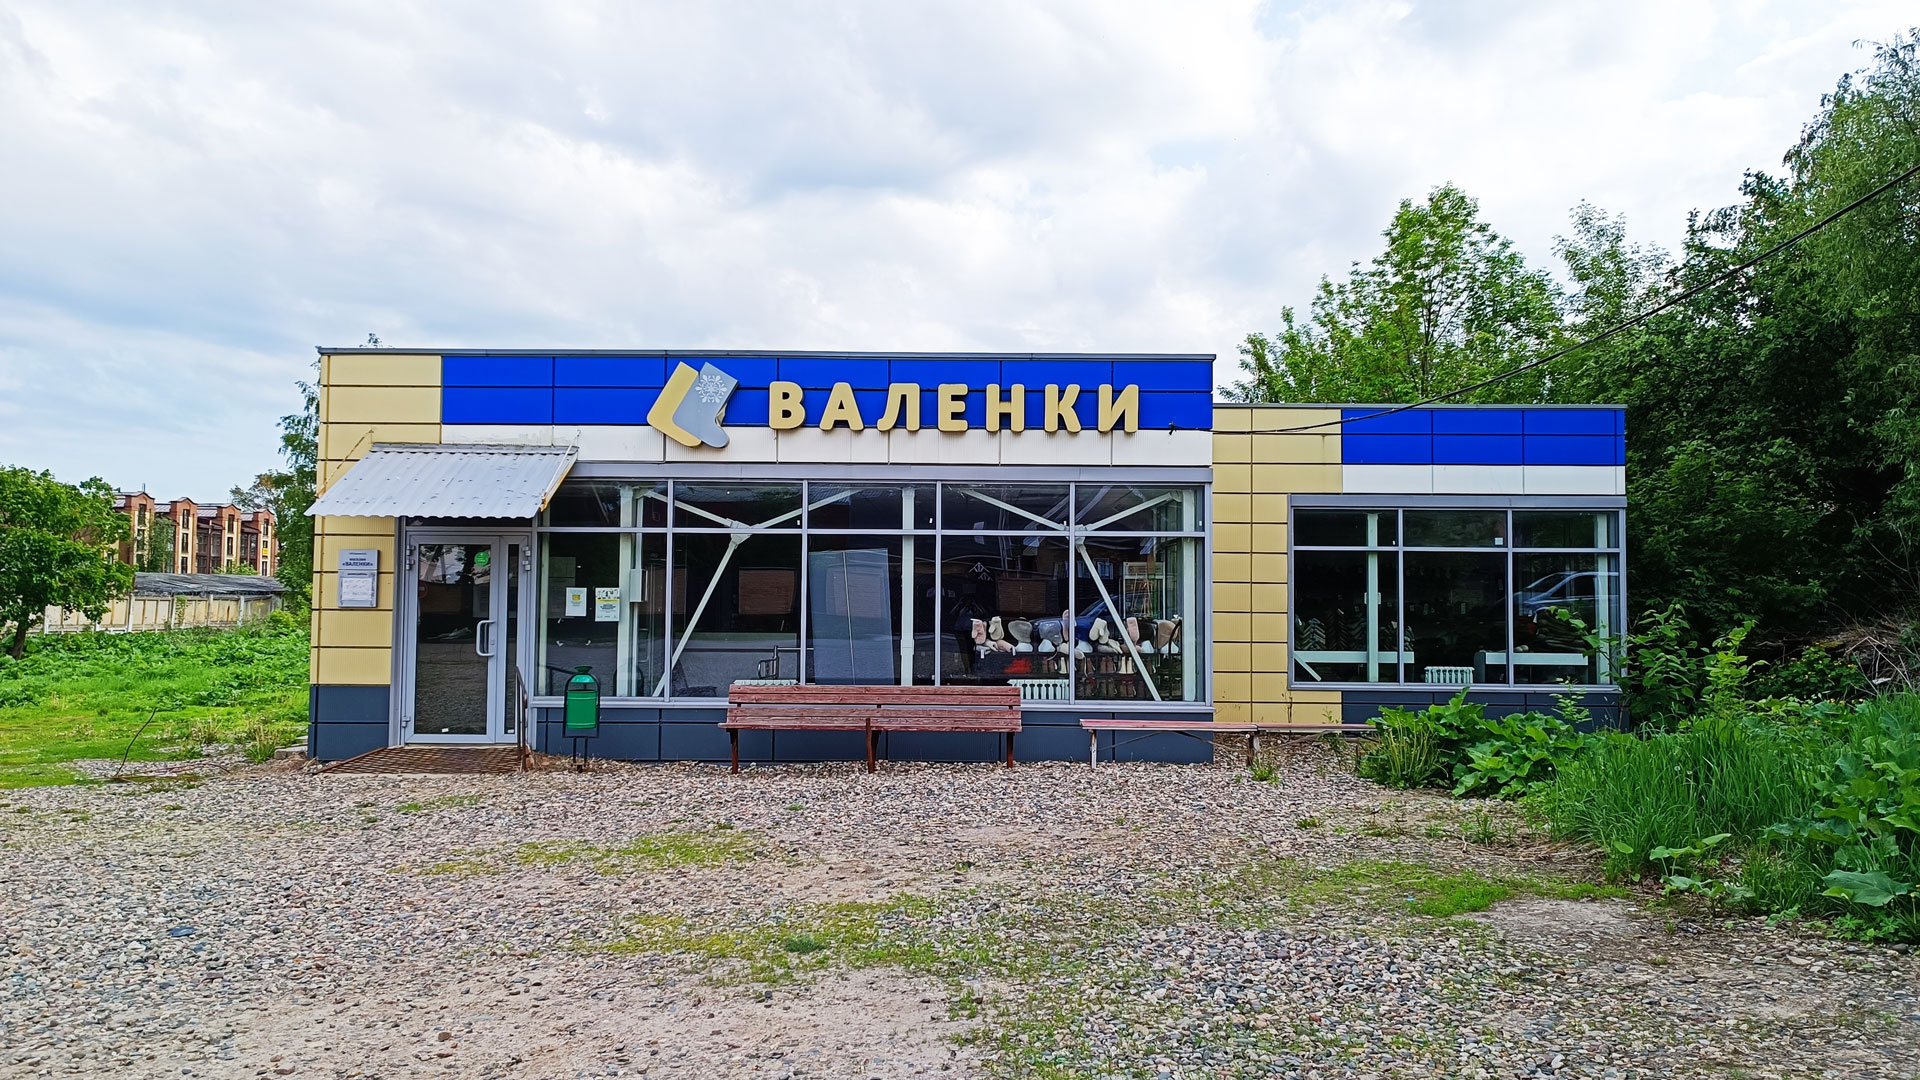 Тверицкая набережная Ярославль: магазин по продаже валяльной продукции.